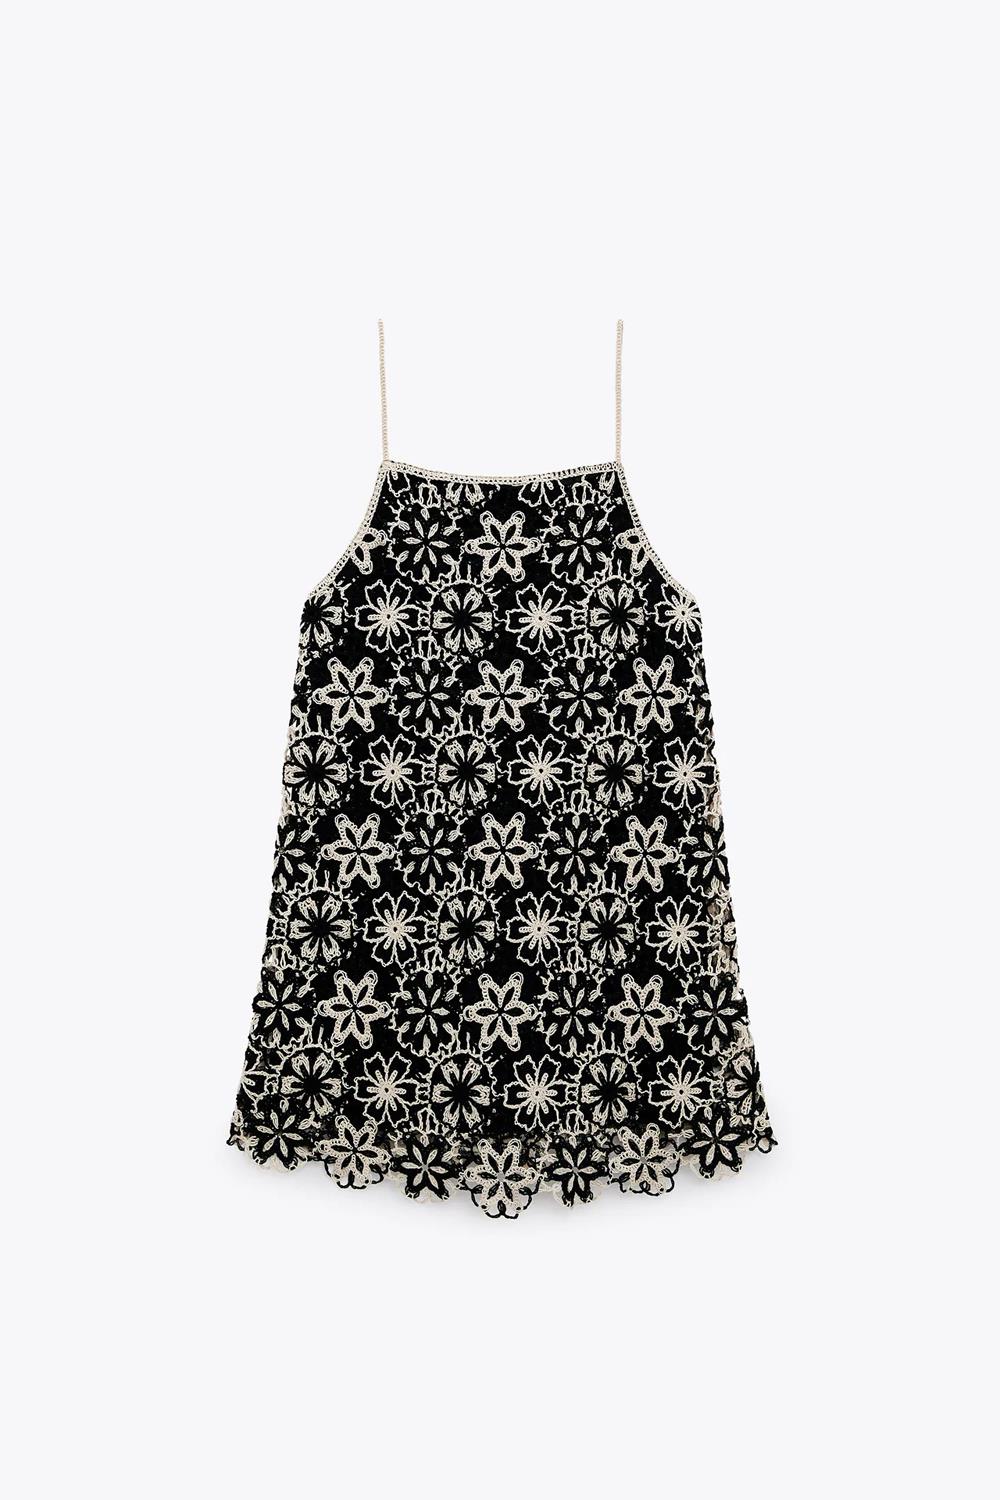 Vestido floral de crochet, de Zara